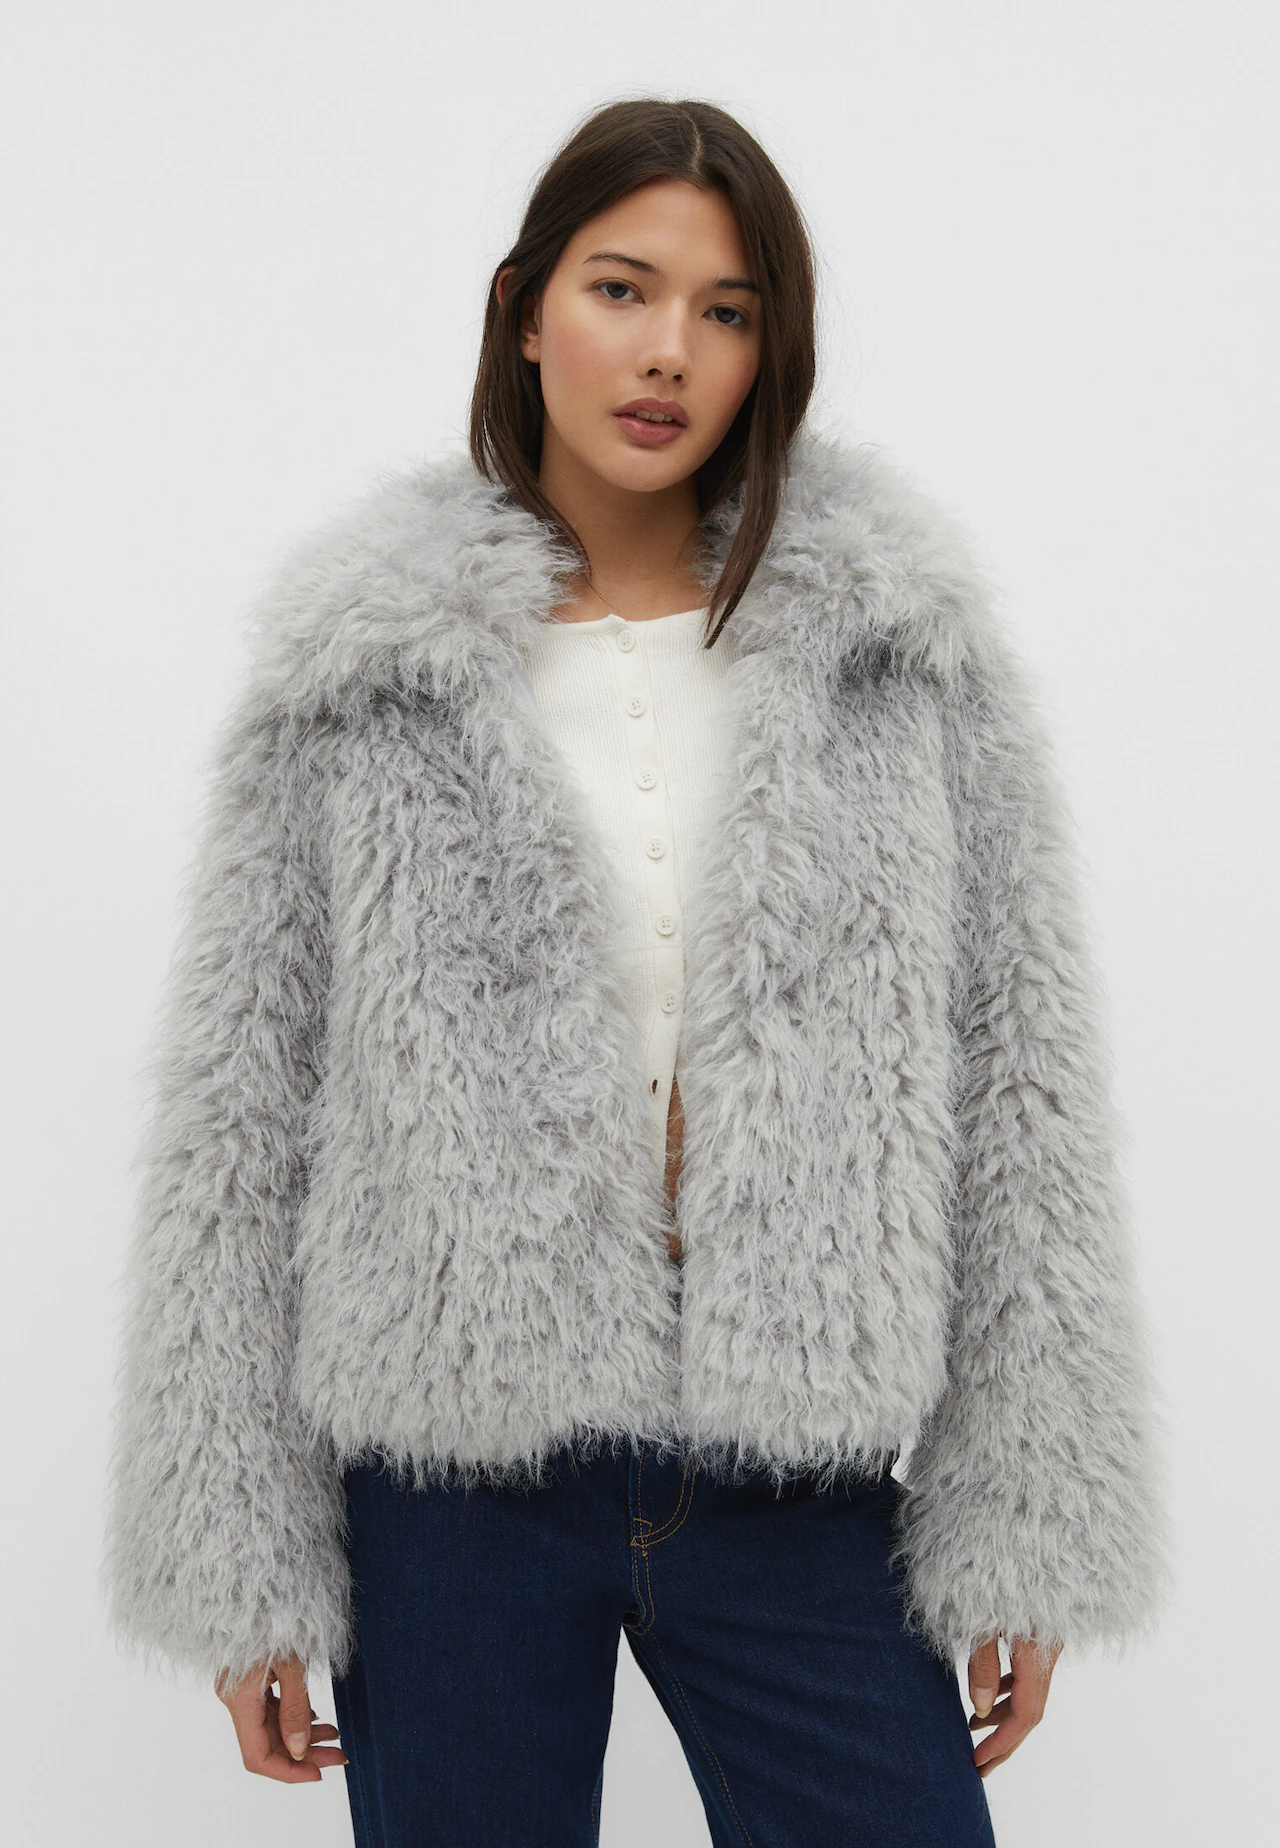 Cropped faux fur jacket - Women's fashion